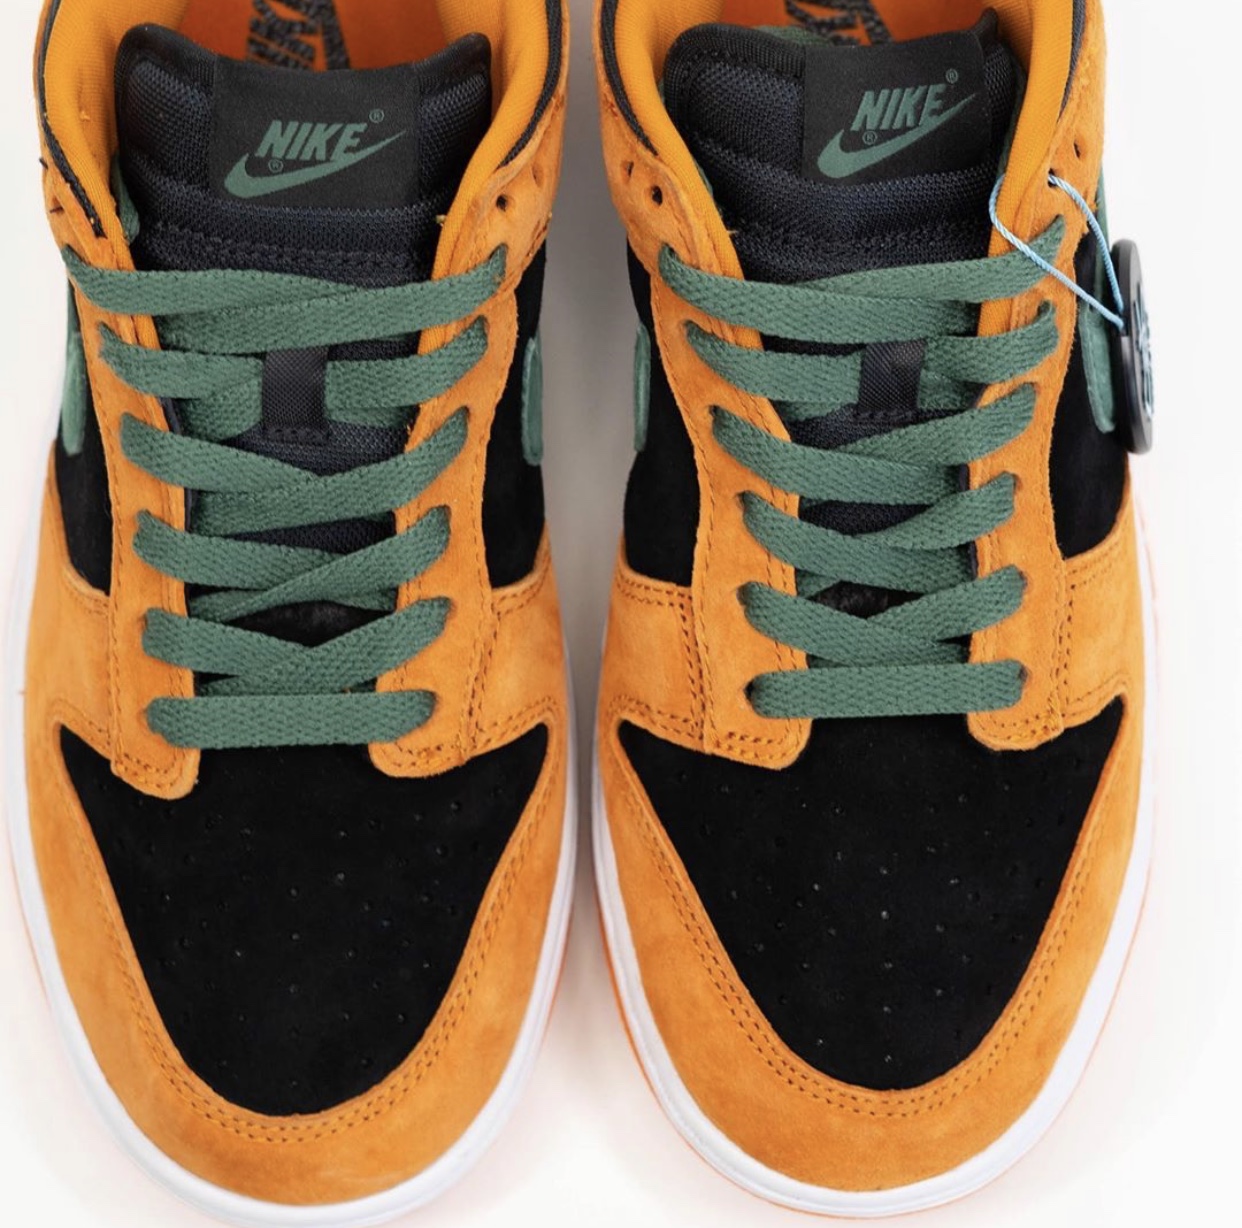 Pánské černé a oranžové tenisky Nike Dunk Low SP Black/Ceramic-Nori DA1469-001 nízké semišové boty a obuv Nike